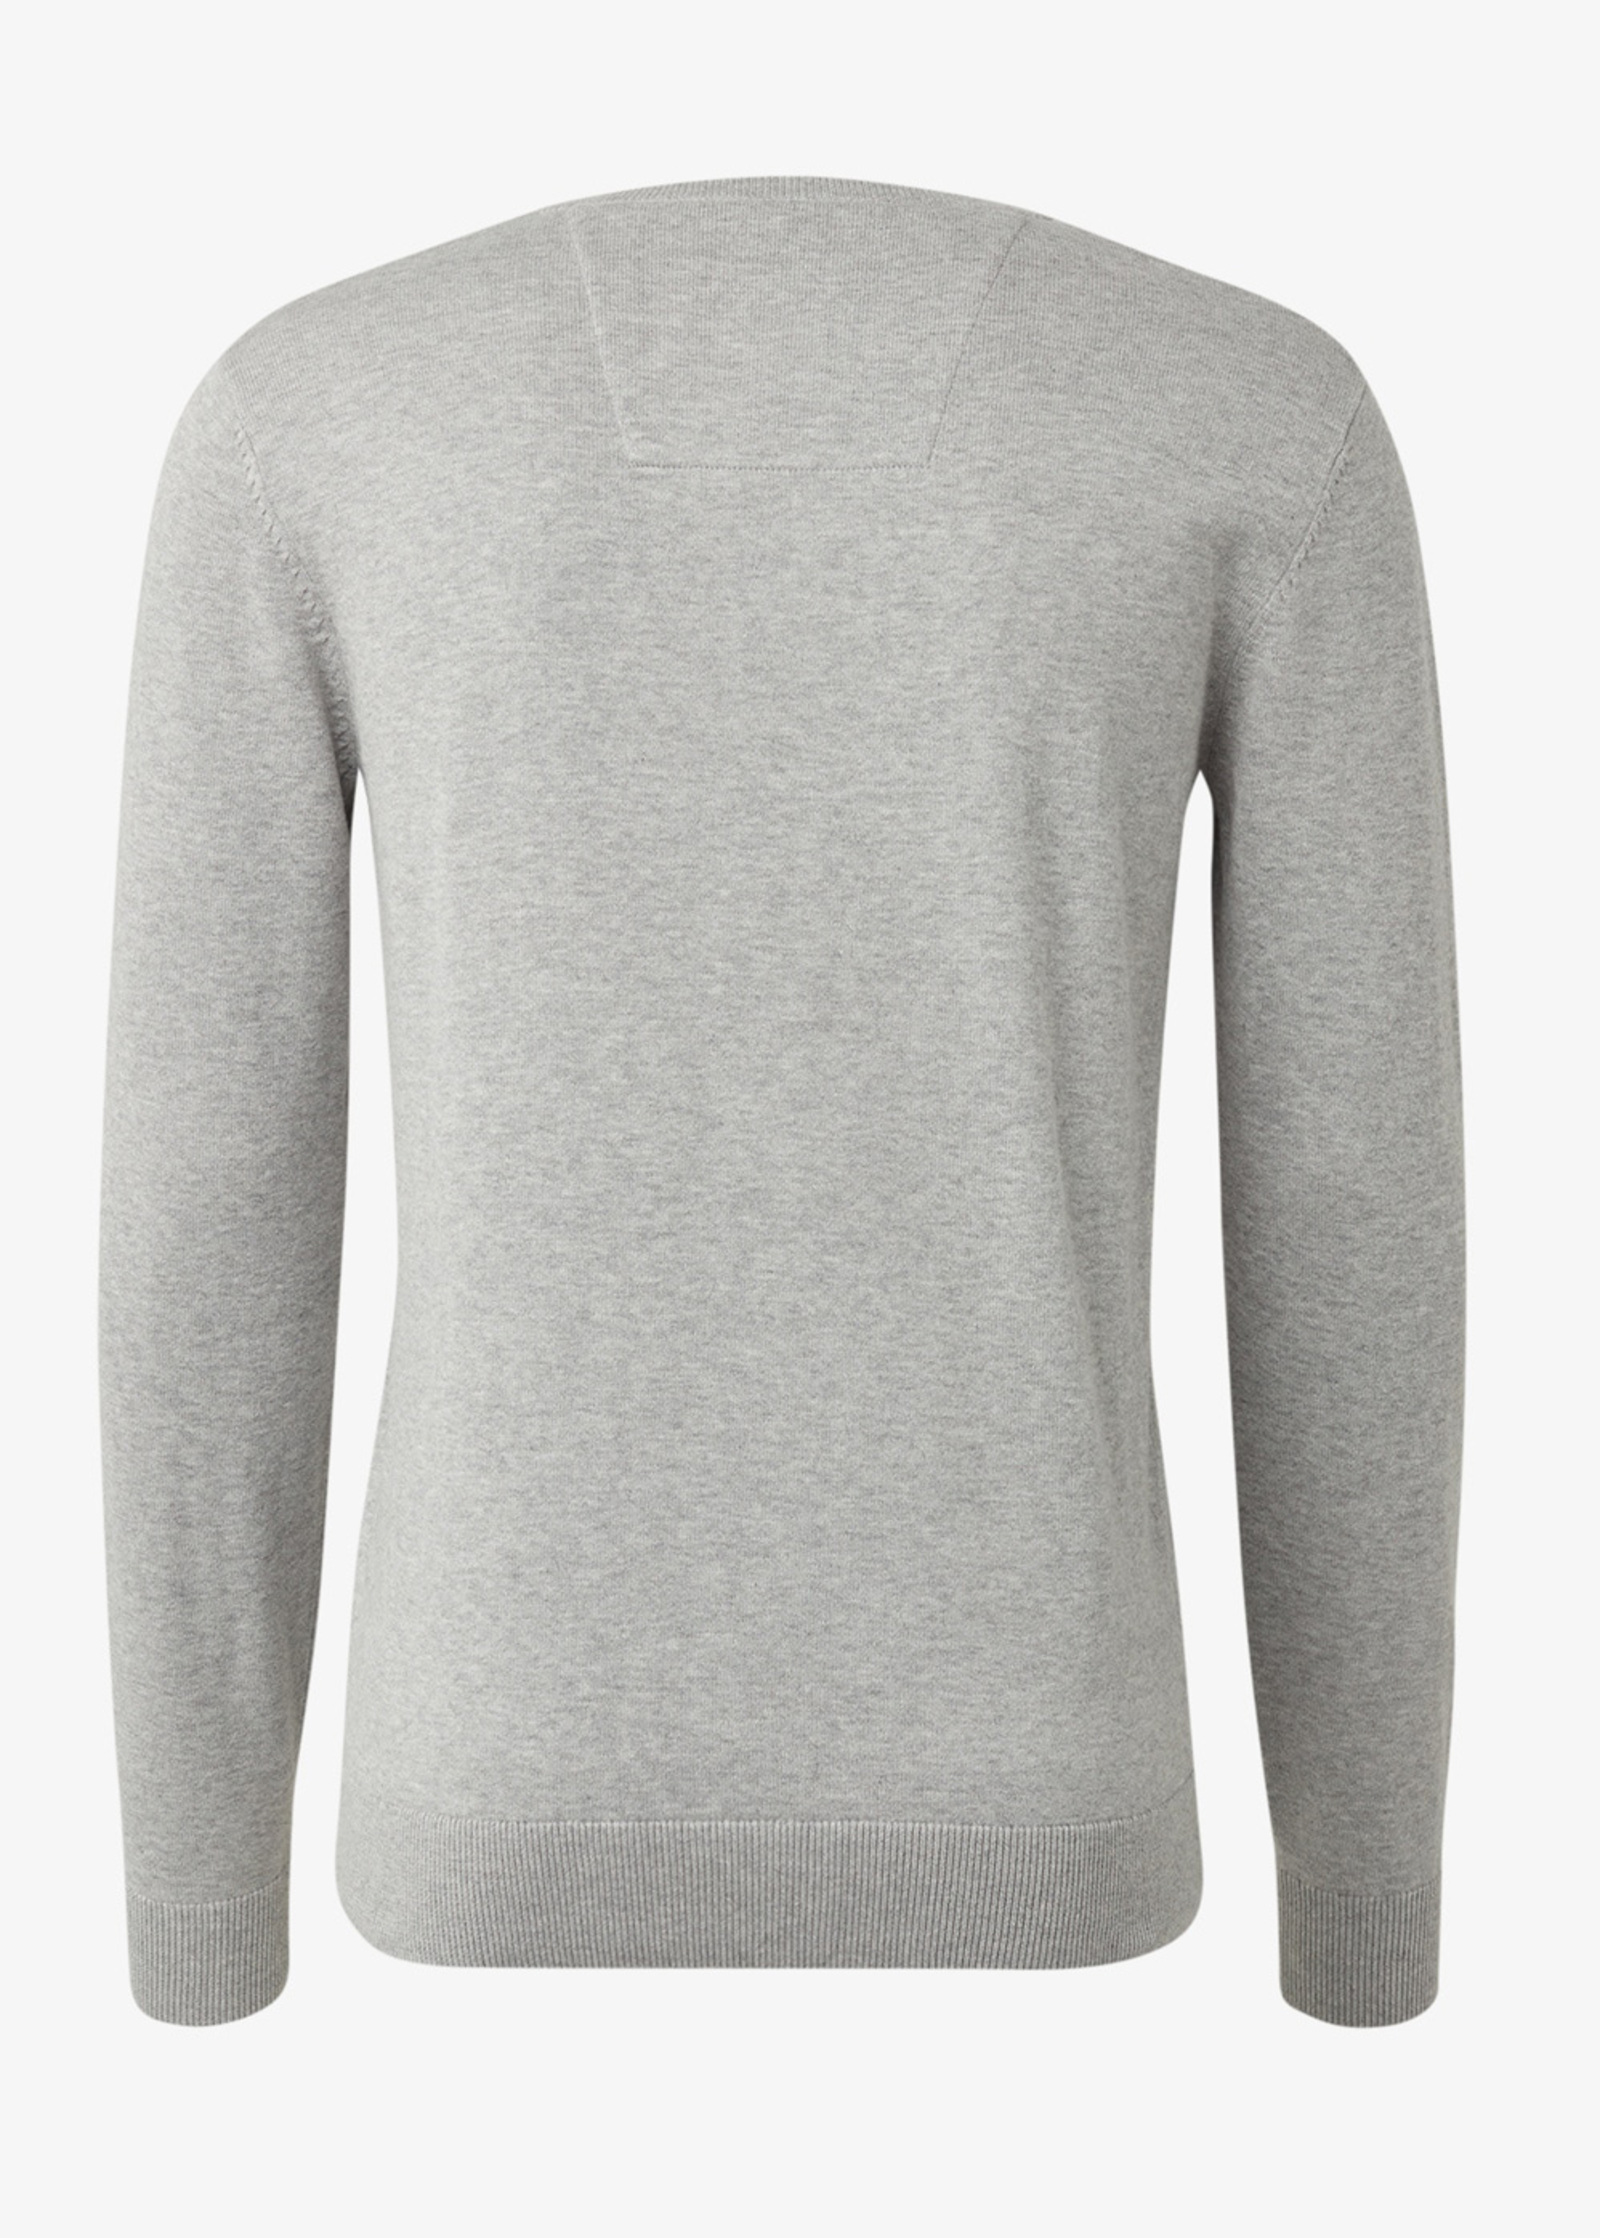 Tom Size Knitted S Grey - Soft Light Tailor Melange Simple 1012819-14427 Jumper